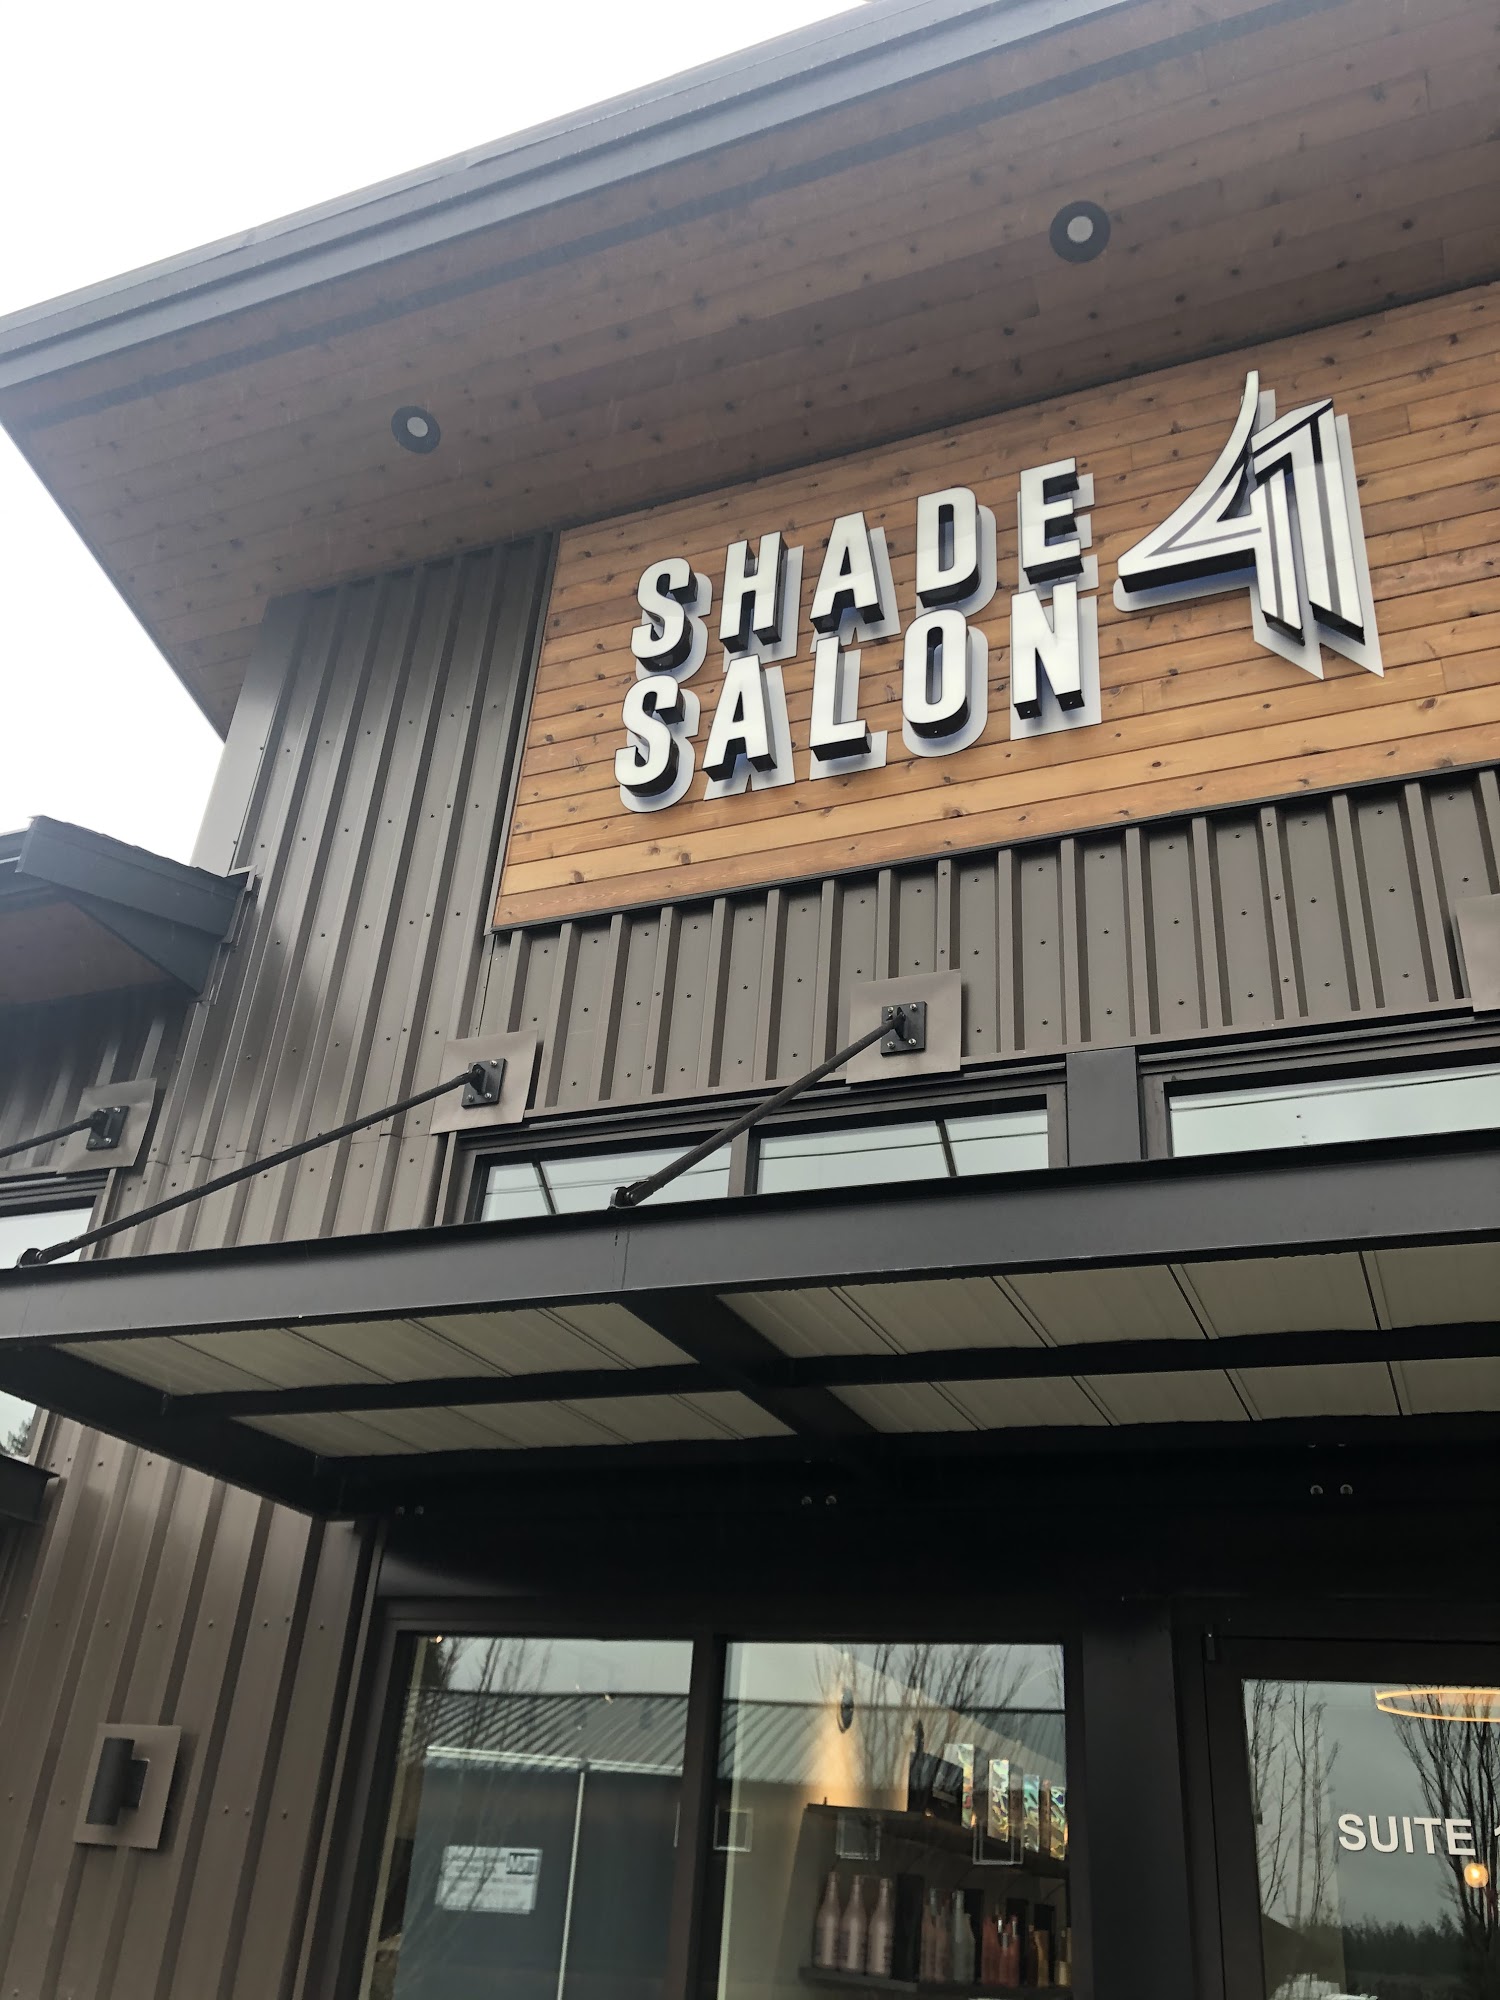 Shade 41 Salon